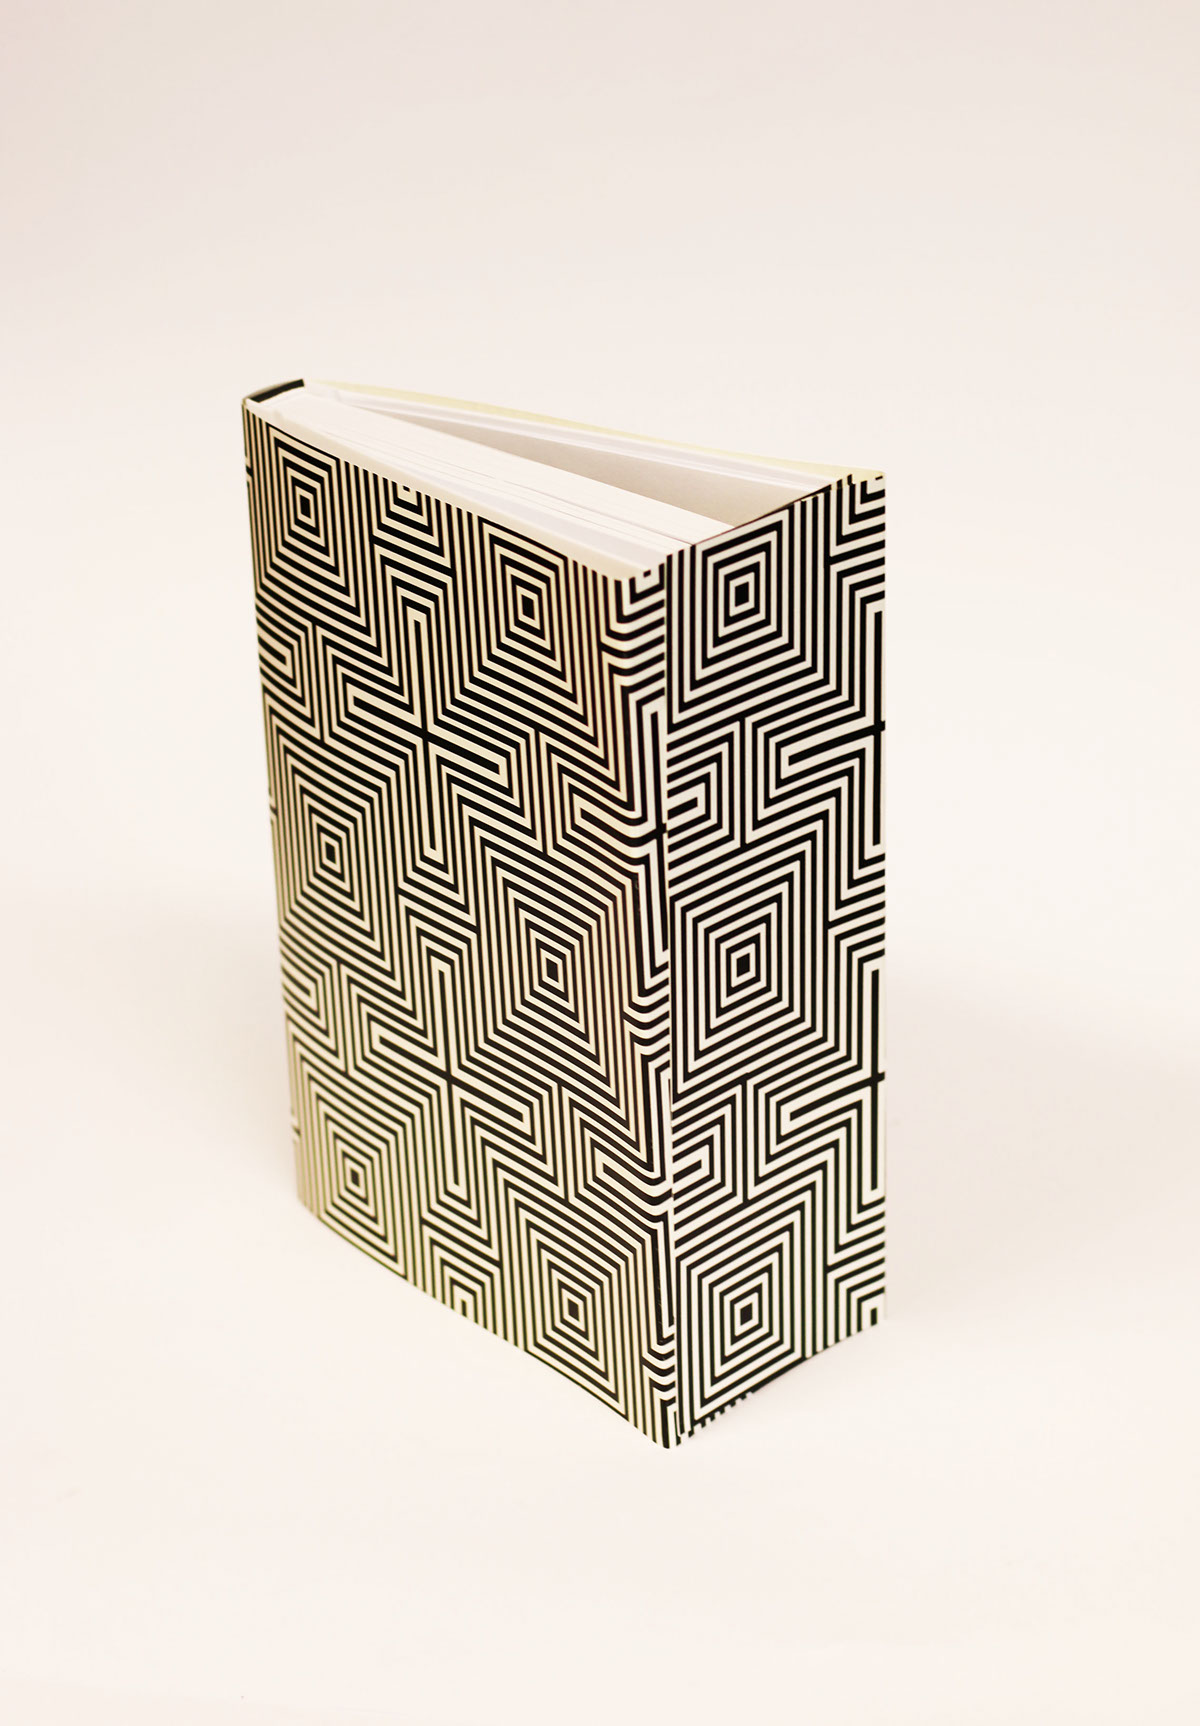 notre dame book optical illusion book design black and white